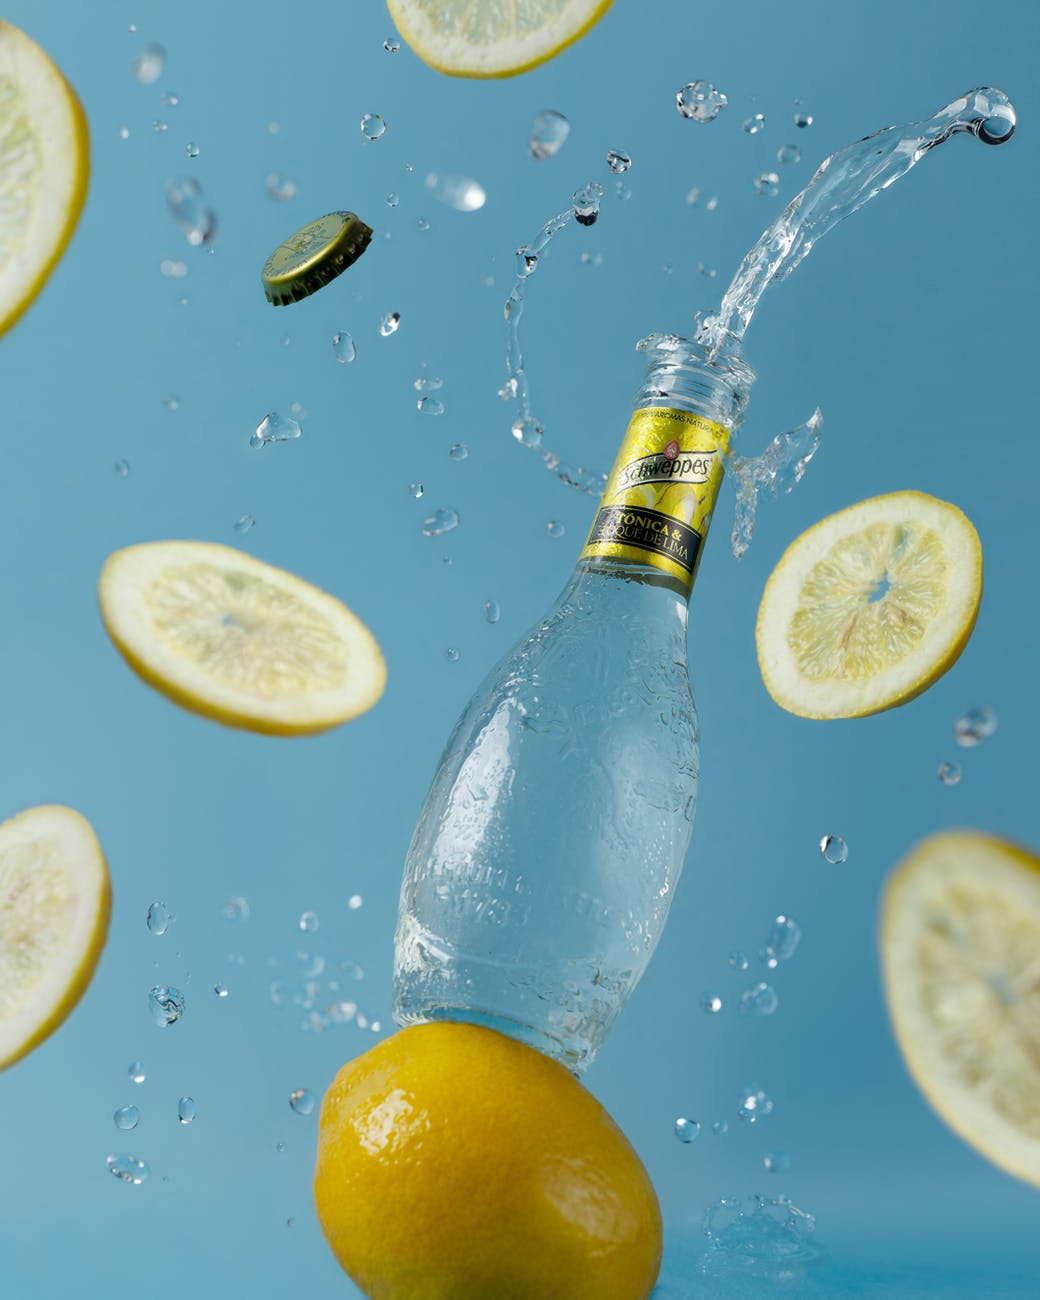 opened soft drink bottle near flying lemon slices